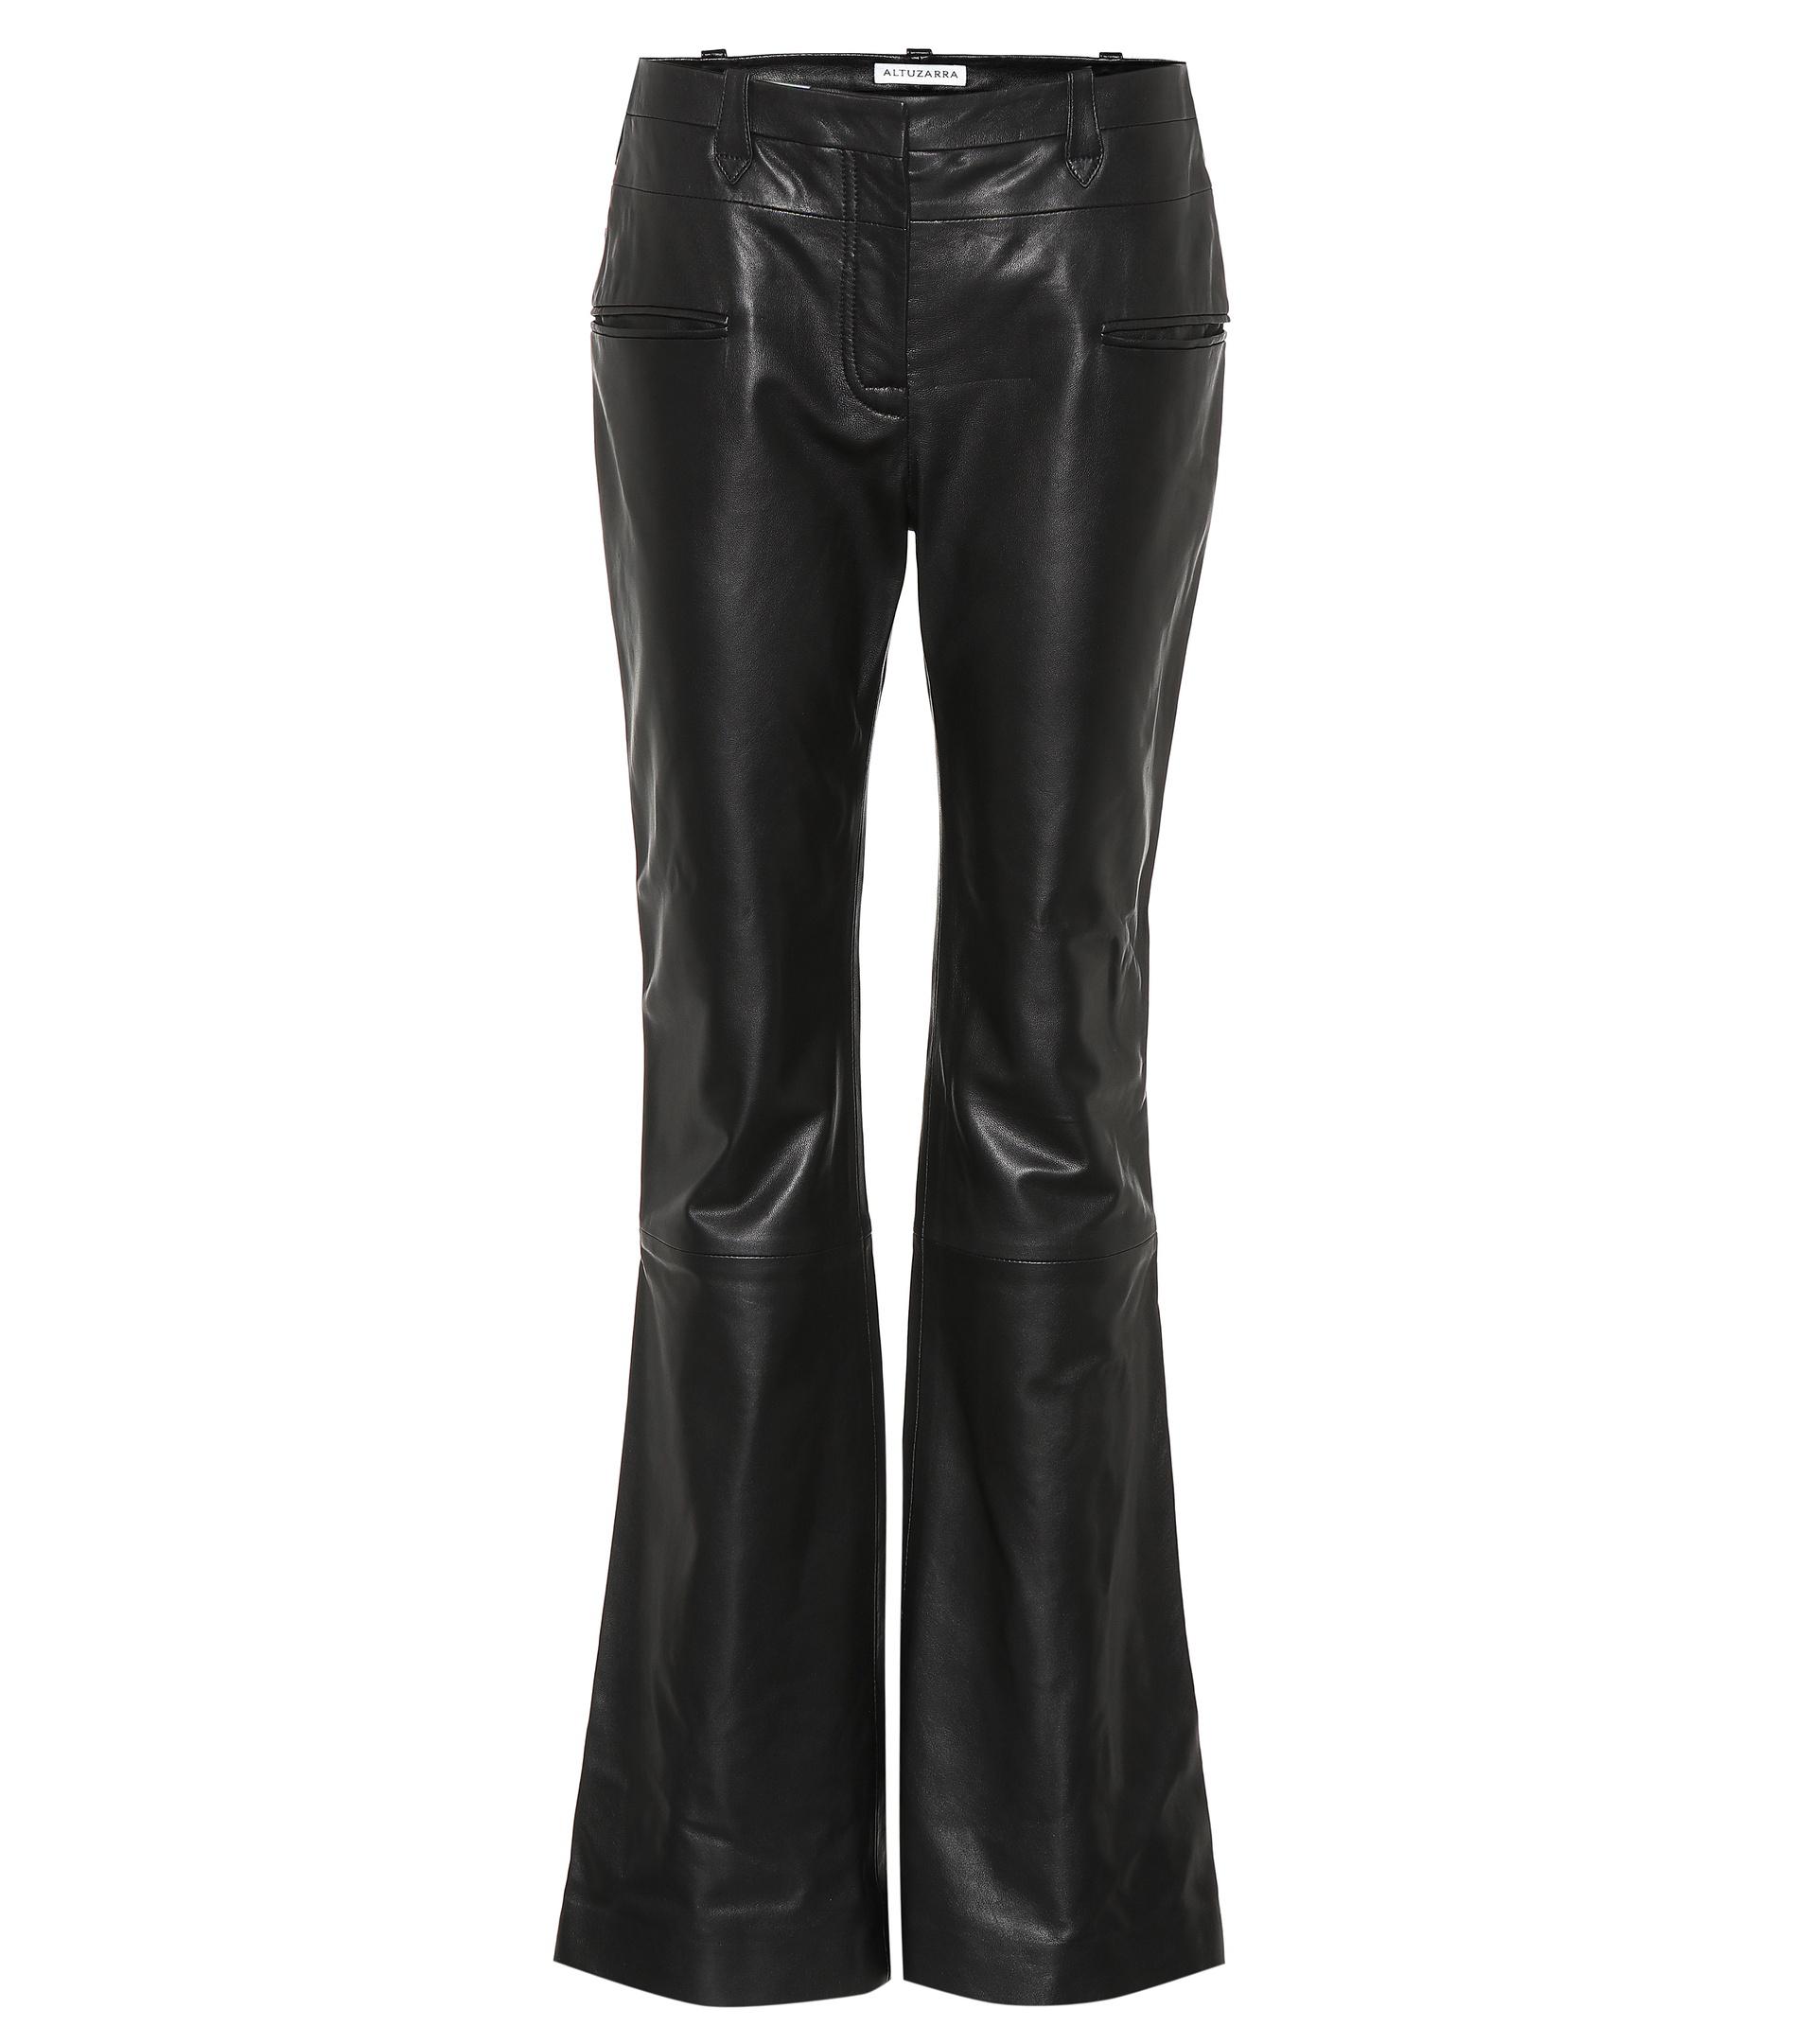 Altuzarra Leather Flare Pants in Black - Lyst